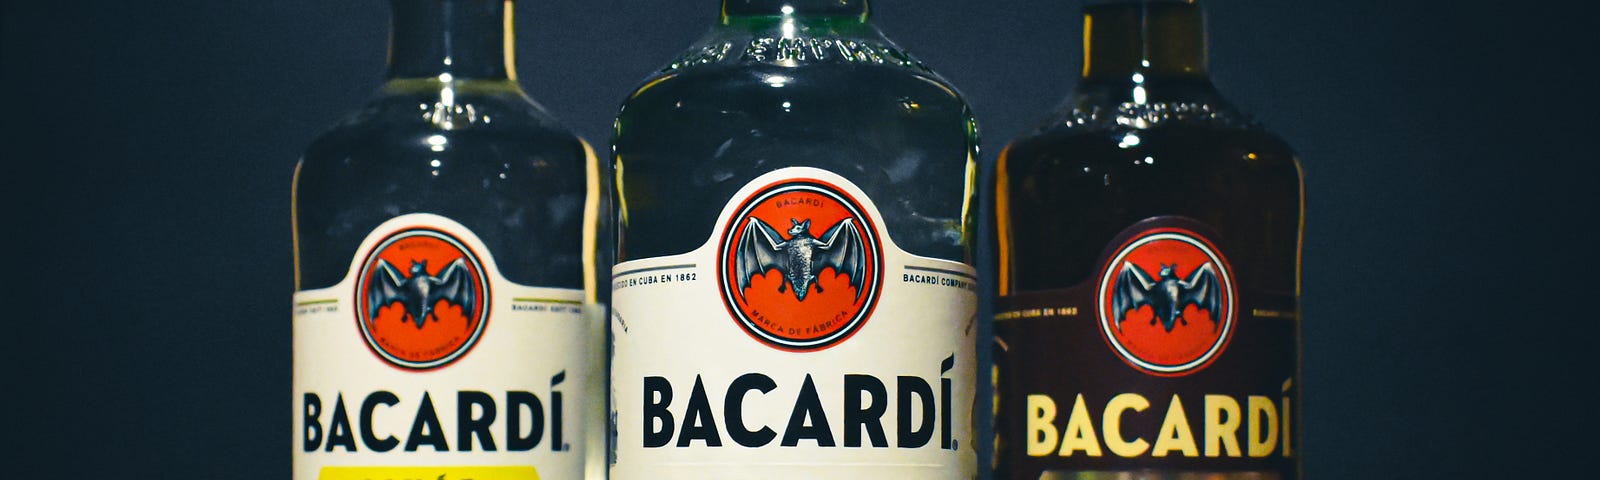 Three Bacardi bottles